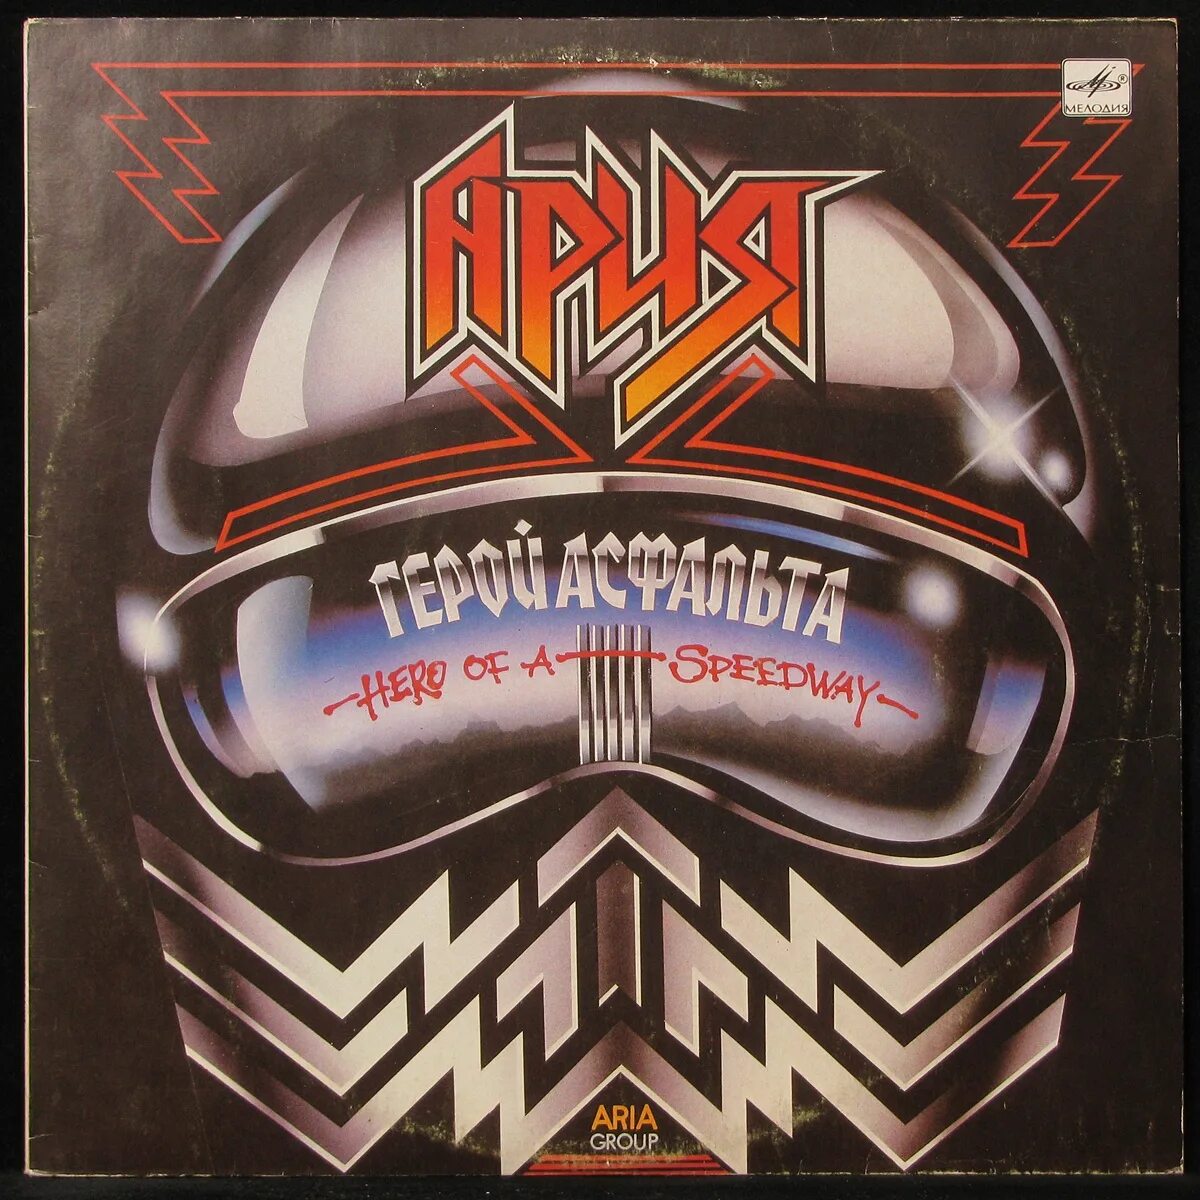 Альбом арии герой. Группа Ария 1987. Группа Ария 1988. Герой асфальта. Пластинки группы Ария.